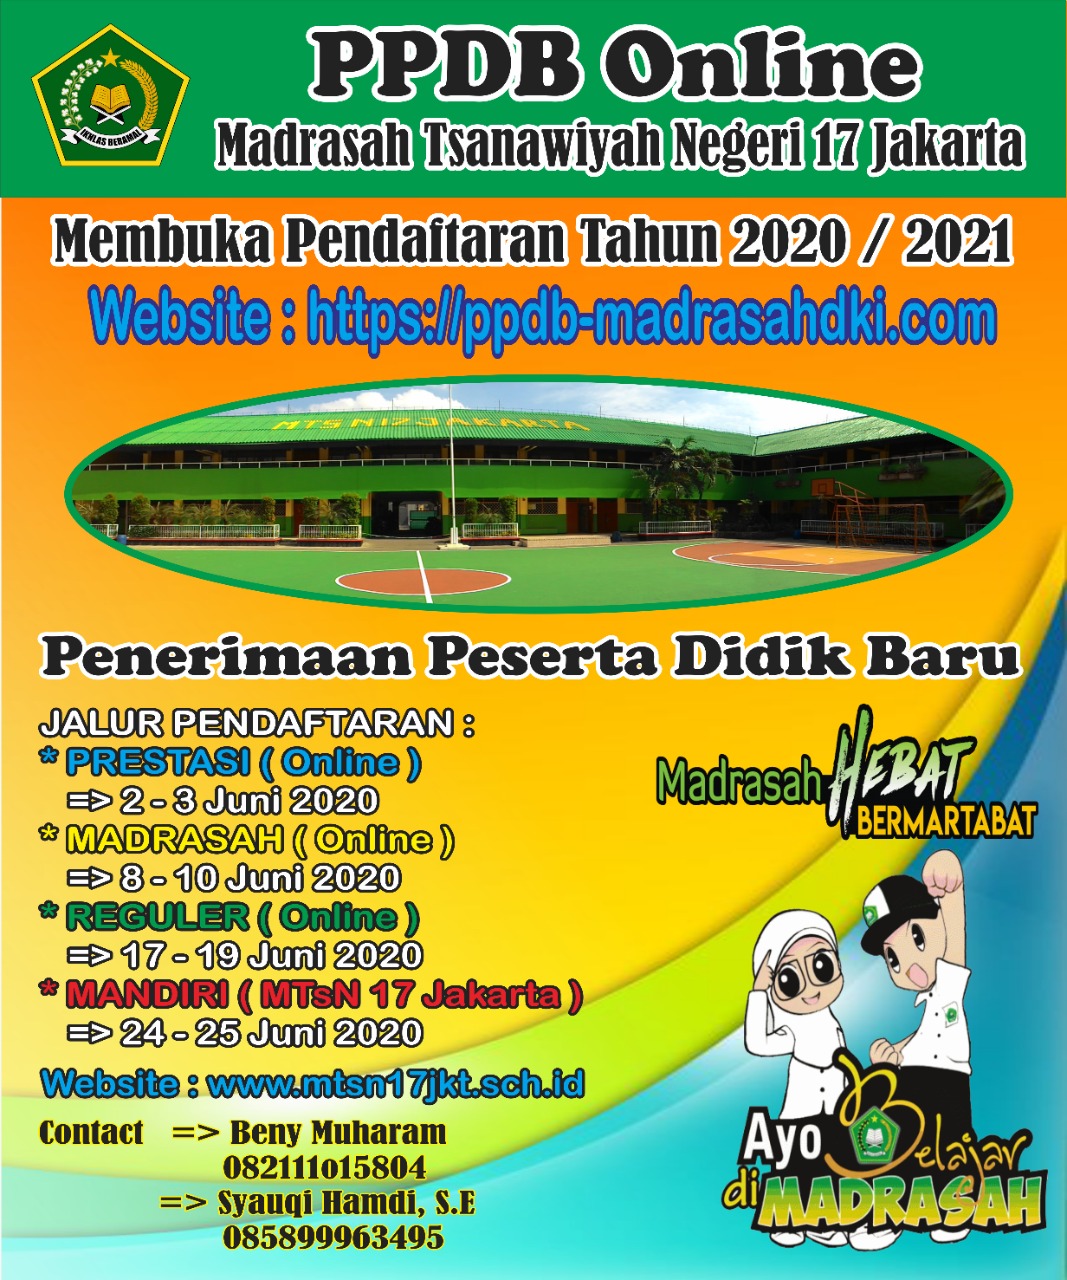 PPDB 2020/2021 MTsN 17 Jakarta Timur